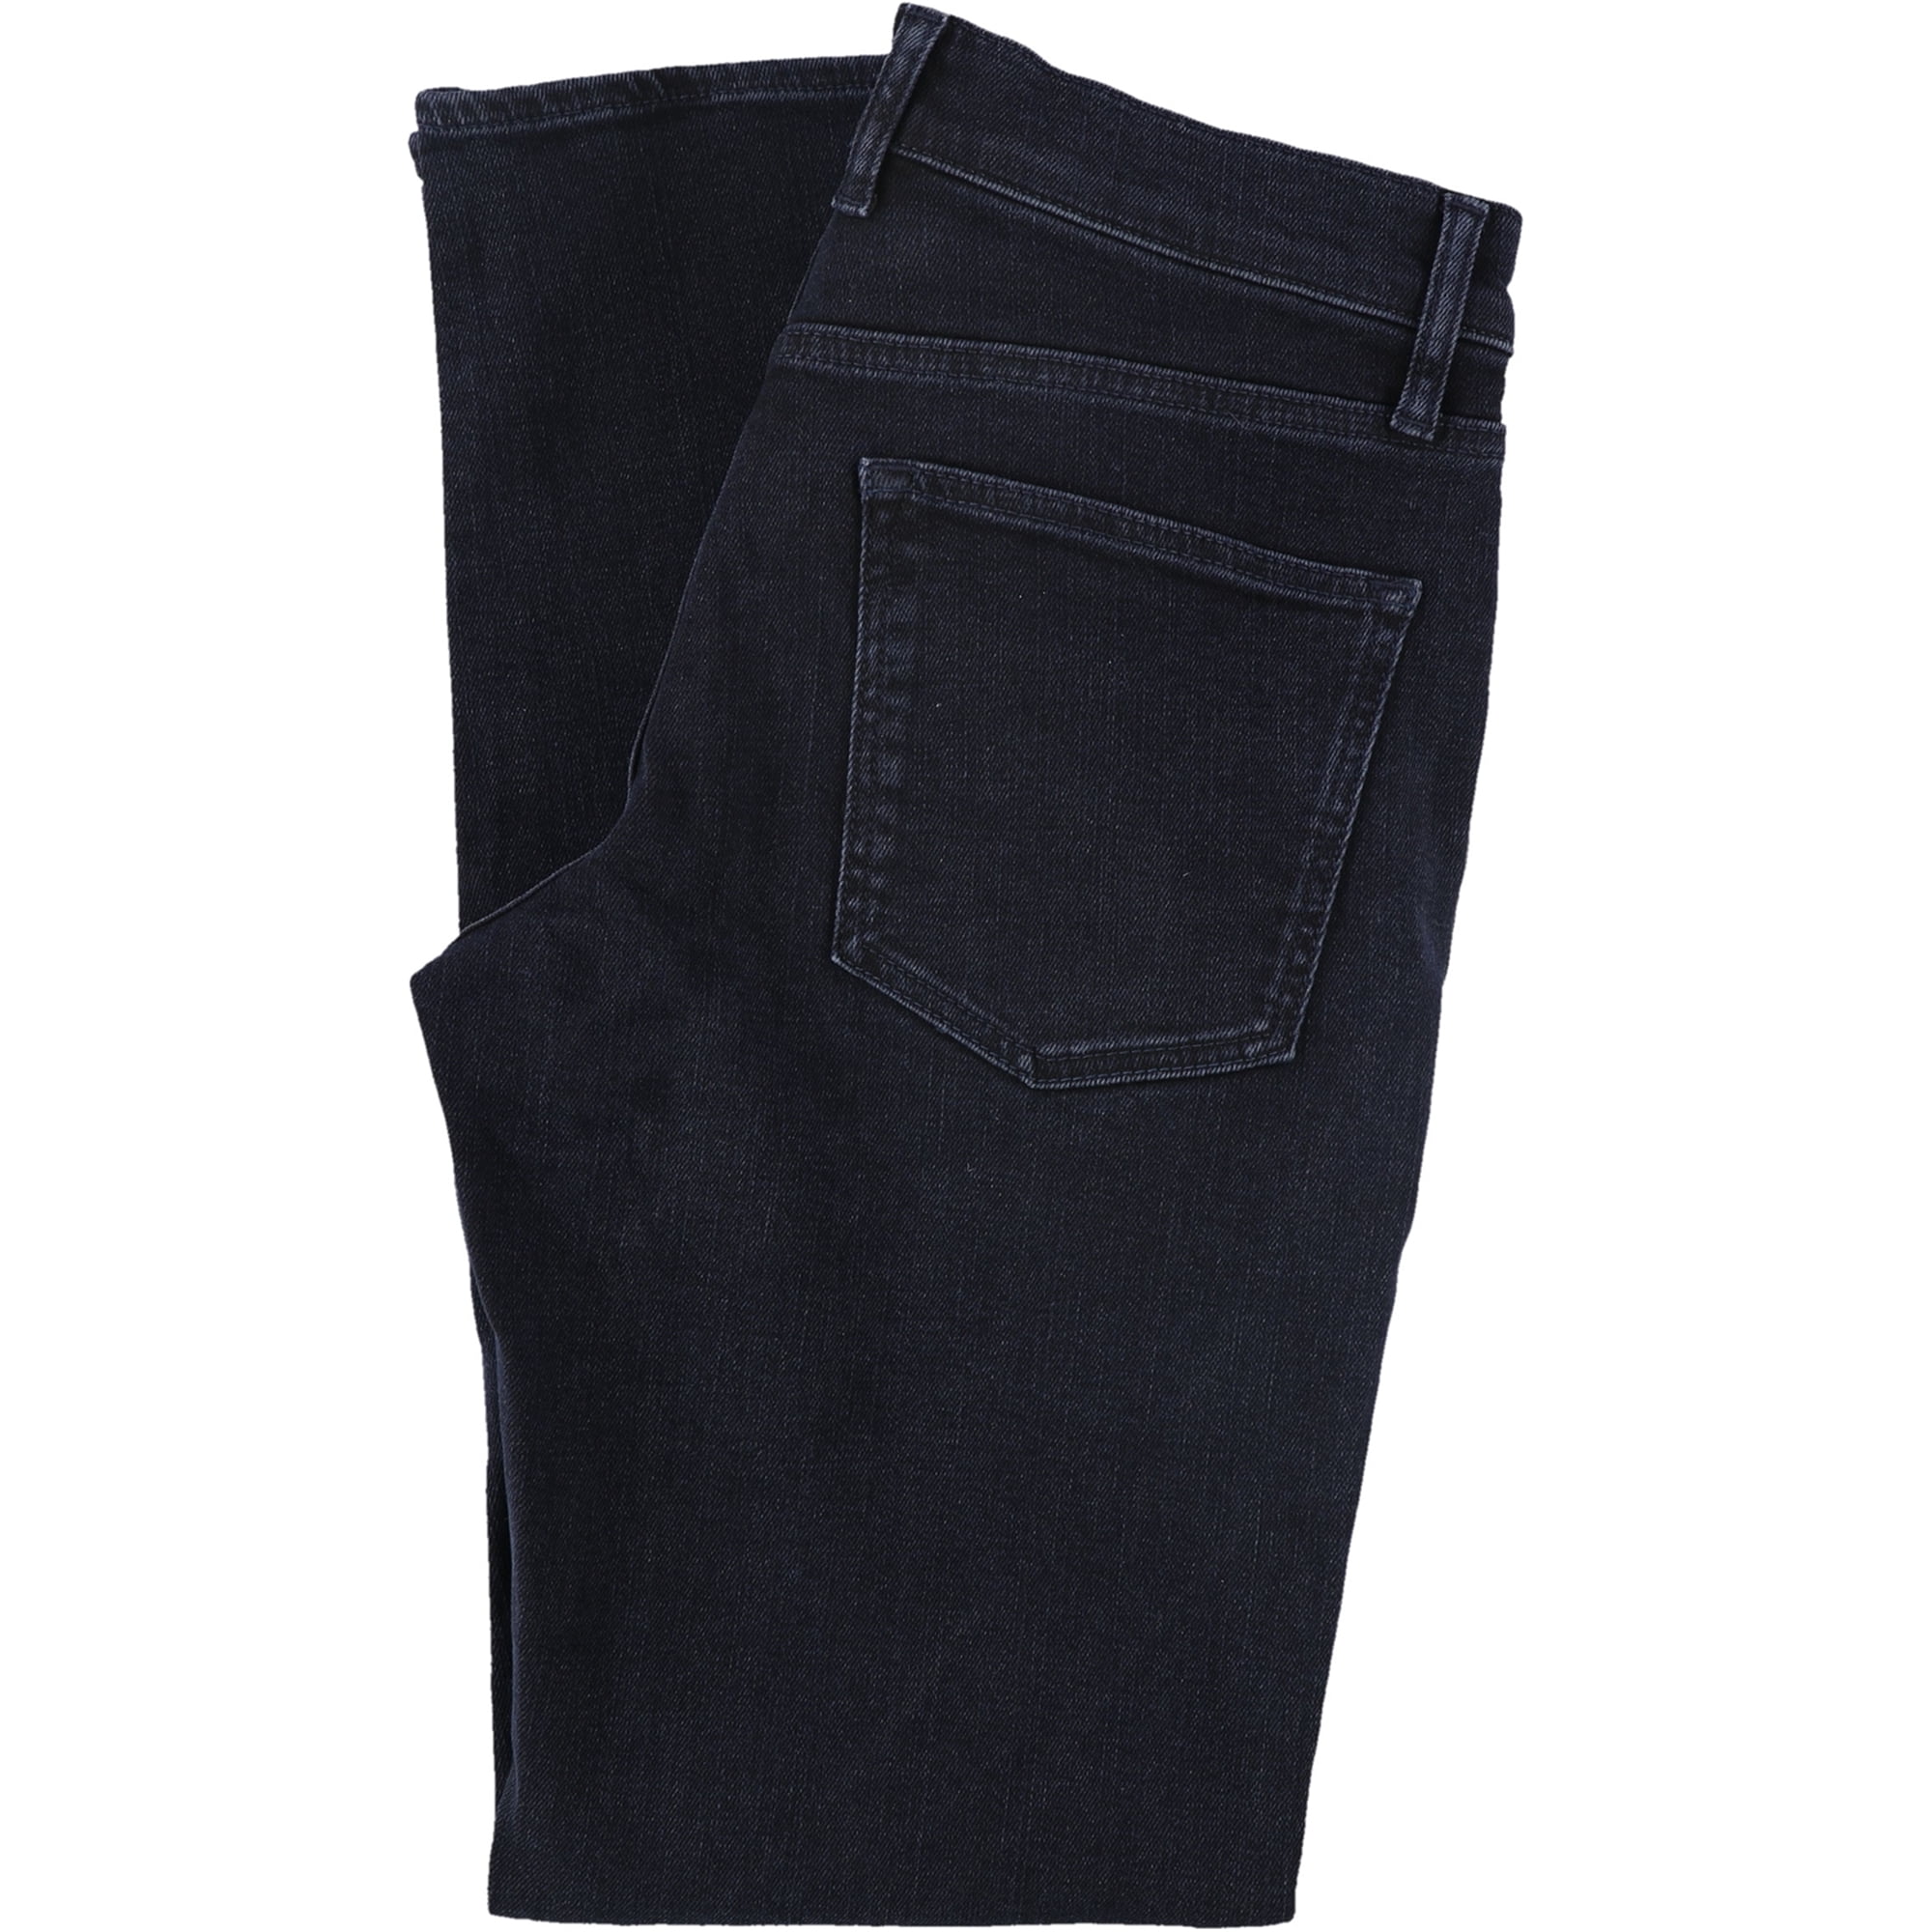 Buy D&B PLUS SIZE WOMEN'S Stretch premium BLACK denim jeans CAPRI PANTS  Online at desertcartSeychelles